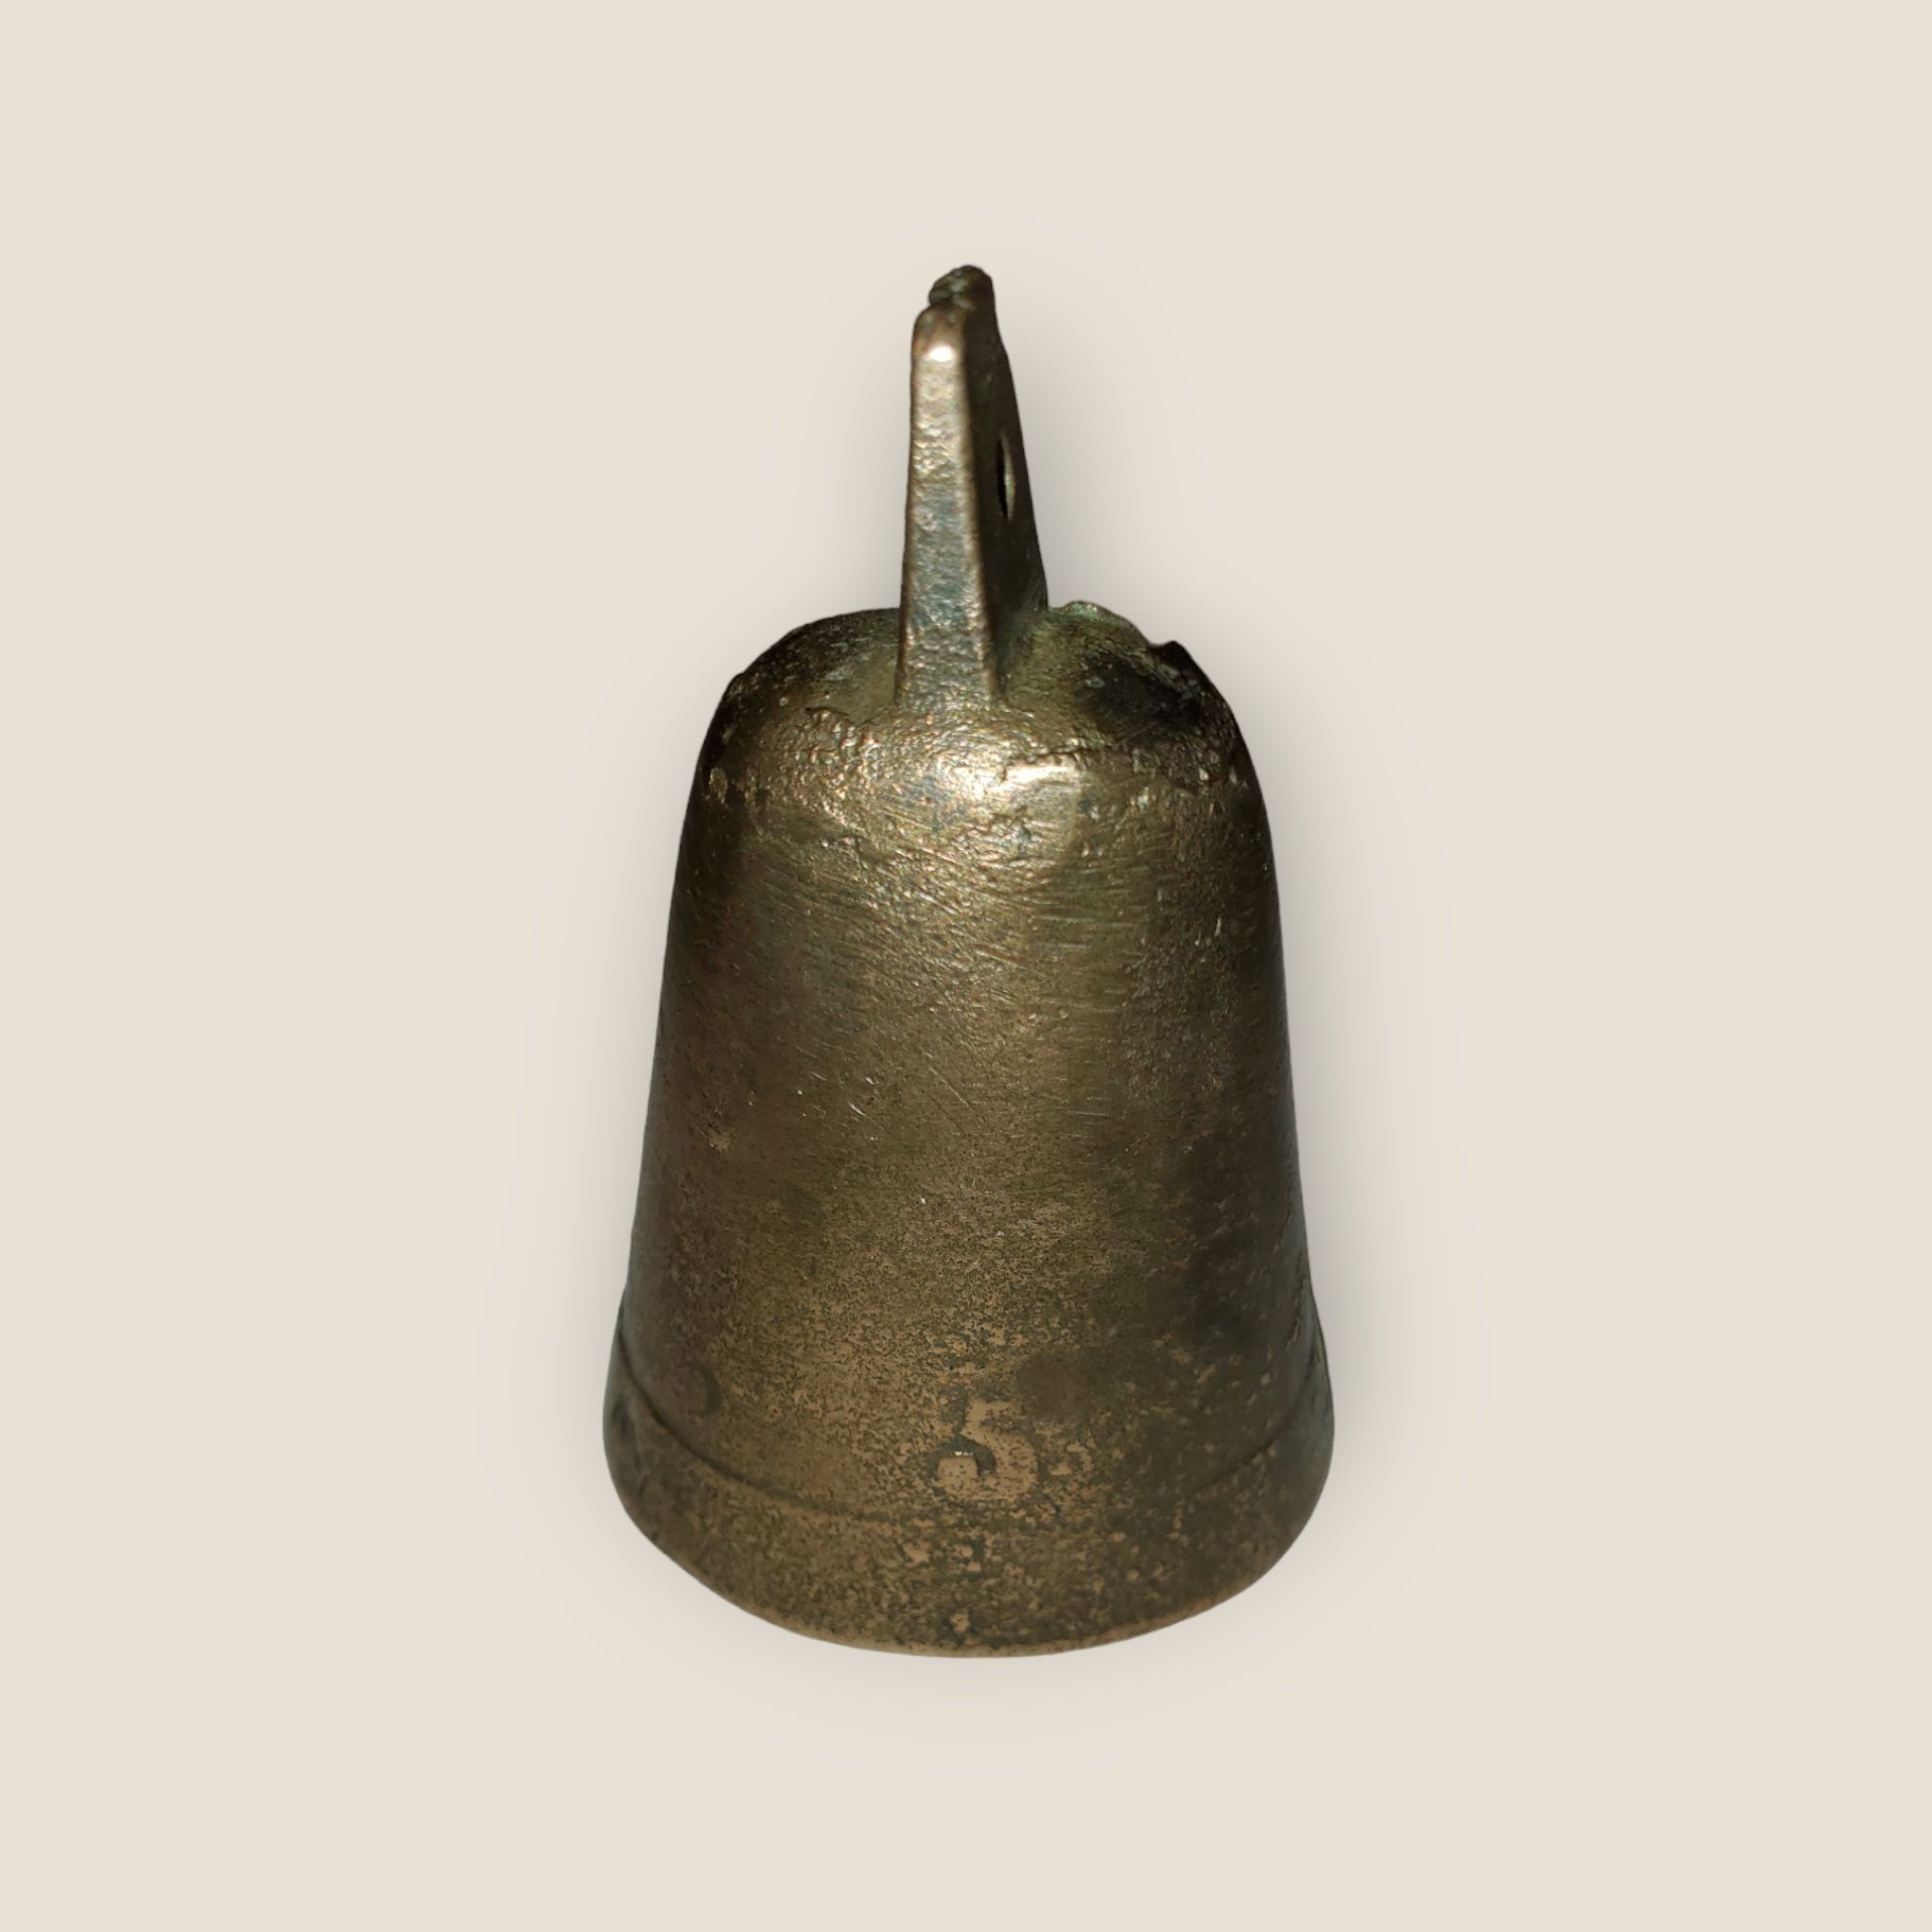 Kolekcjonerski Zabytkowy Dzwonek z Brazu
"A PARIS"